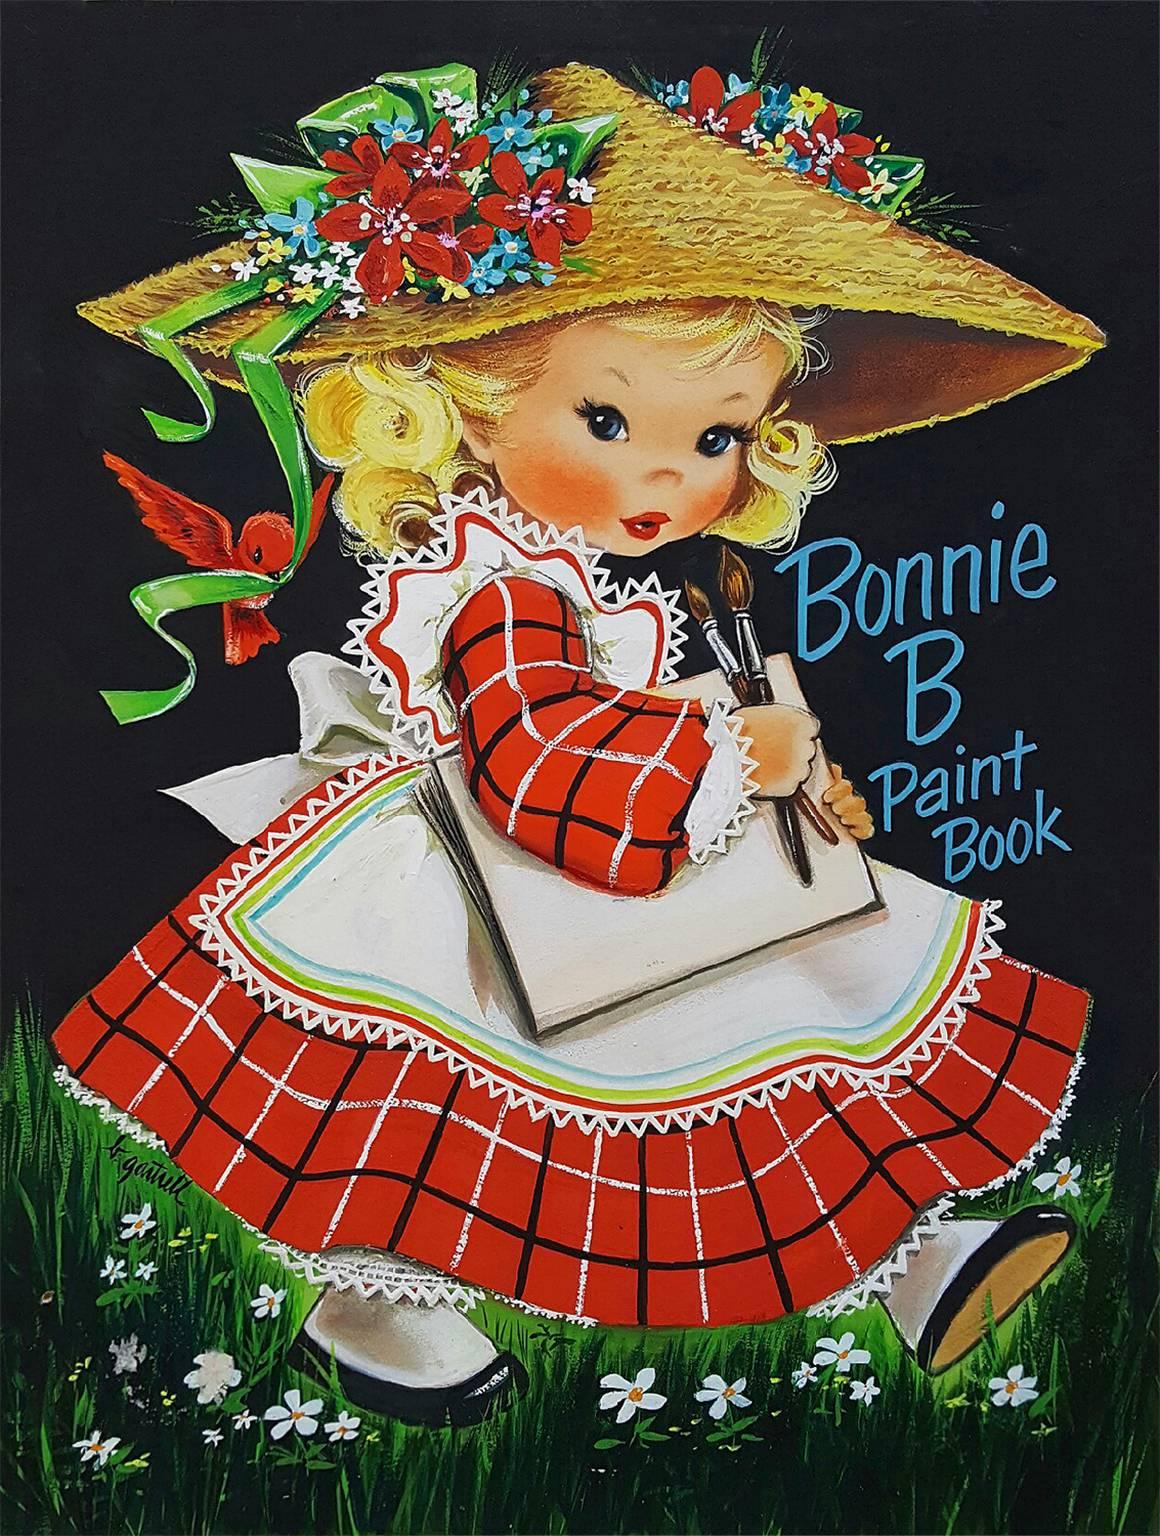 Couverture de livre Bonnie B. Paint